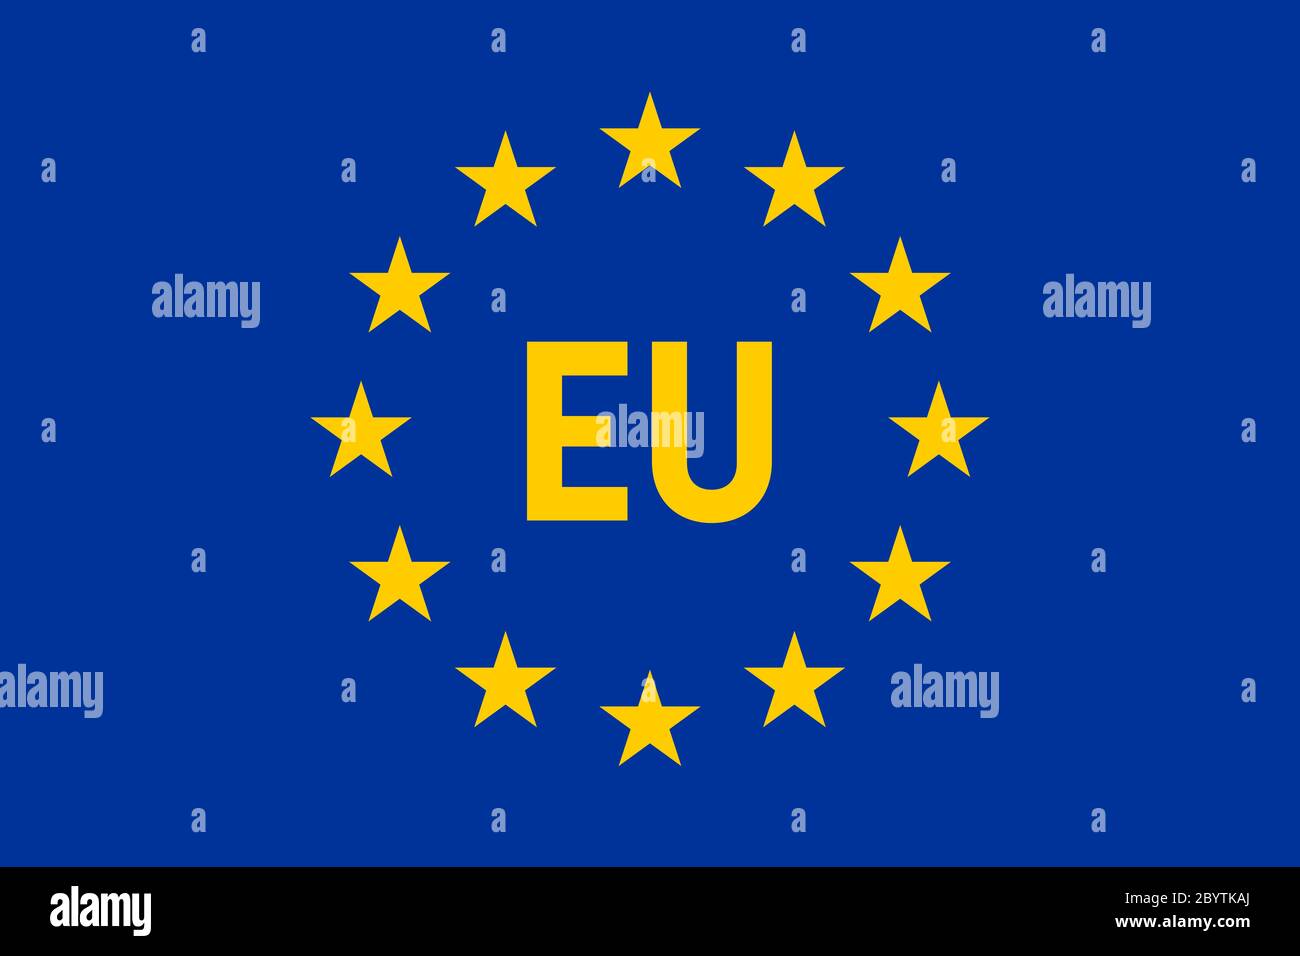 Là biểu tượng linh hoạt của sự thống nhất và tương tác liên châu lục, lá cờ Liên minh Châu Âu đại diện cho một truyền thống văn hóa phong phú và những giá trị đạo đức cao cả. Hãy khám phá hình ảnh liên quan đến lá cờ Liên minh Châu Âu để hiểu thêm về sức mạnh của tinh thần đoàn kết.